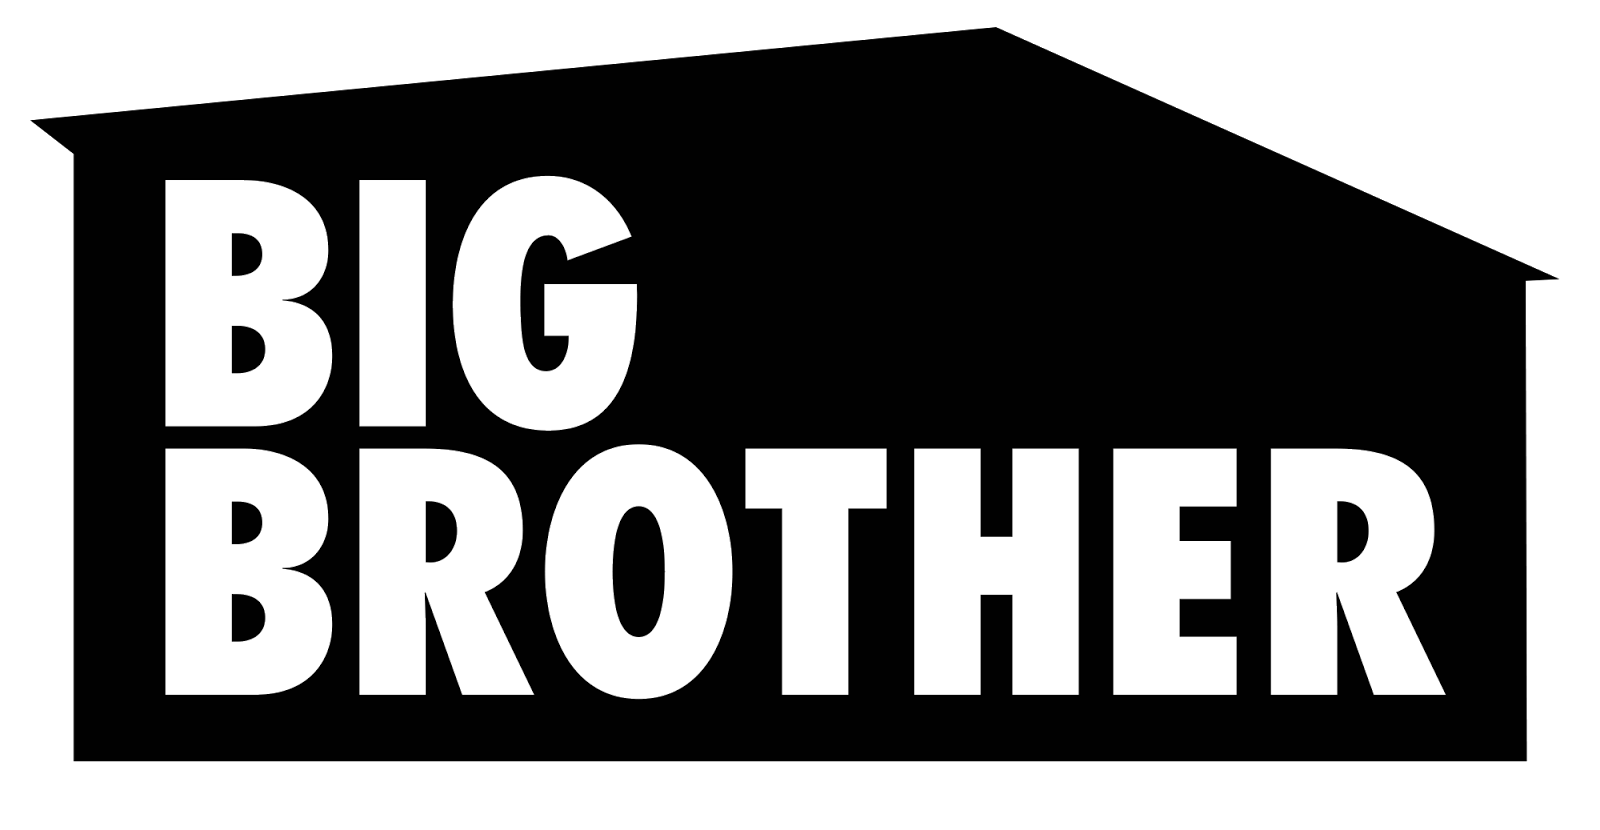 Best big brother. Big brother. Big brother надпись. Большой брат лого. Big brother обои.